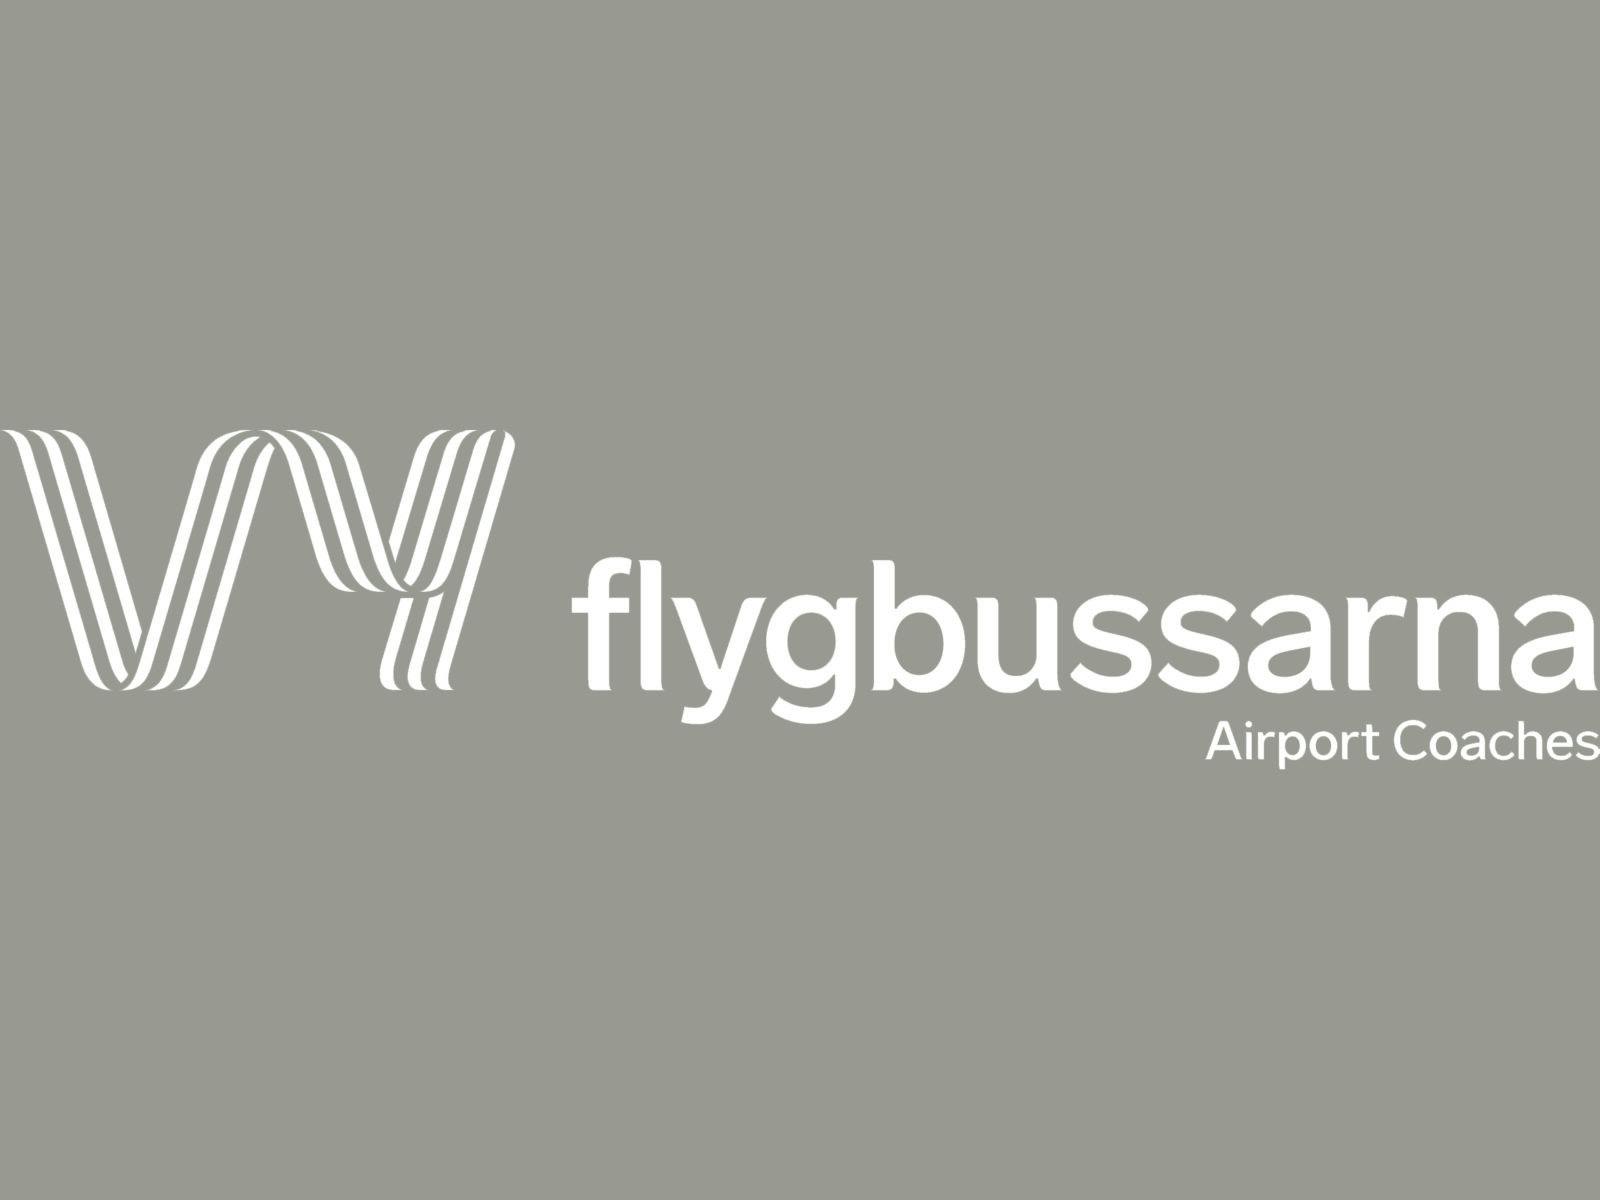 Bilden visar en logotyp med texten "flygbussarna" och undertexten "Airport Coaches". Logotypen består av en stiliserad bokstav "W" som är formad av flera parallella linjer som ger ett tredimensionellt intryck. Bakgrunden är en enfärgad grå nyans. Logotypen representerar ett företag som erbjuder busstransport till och från flygplatser.